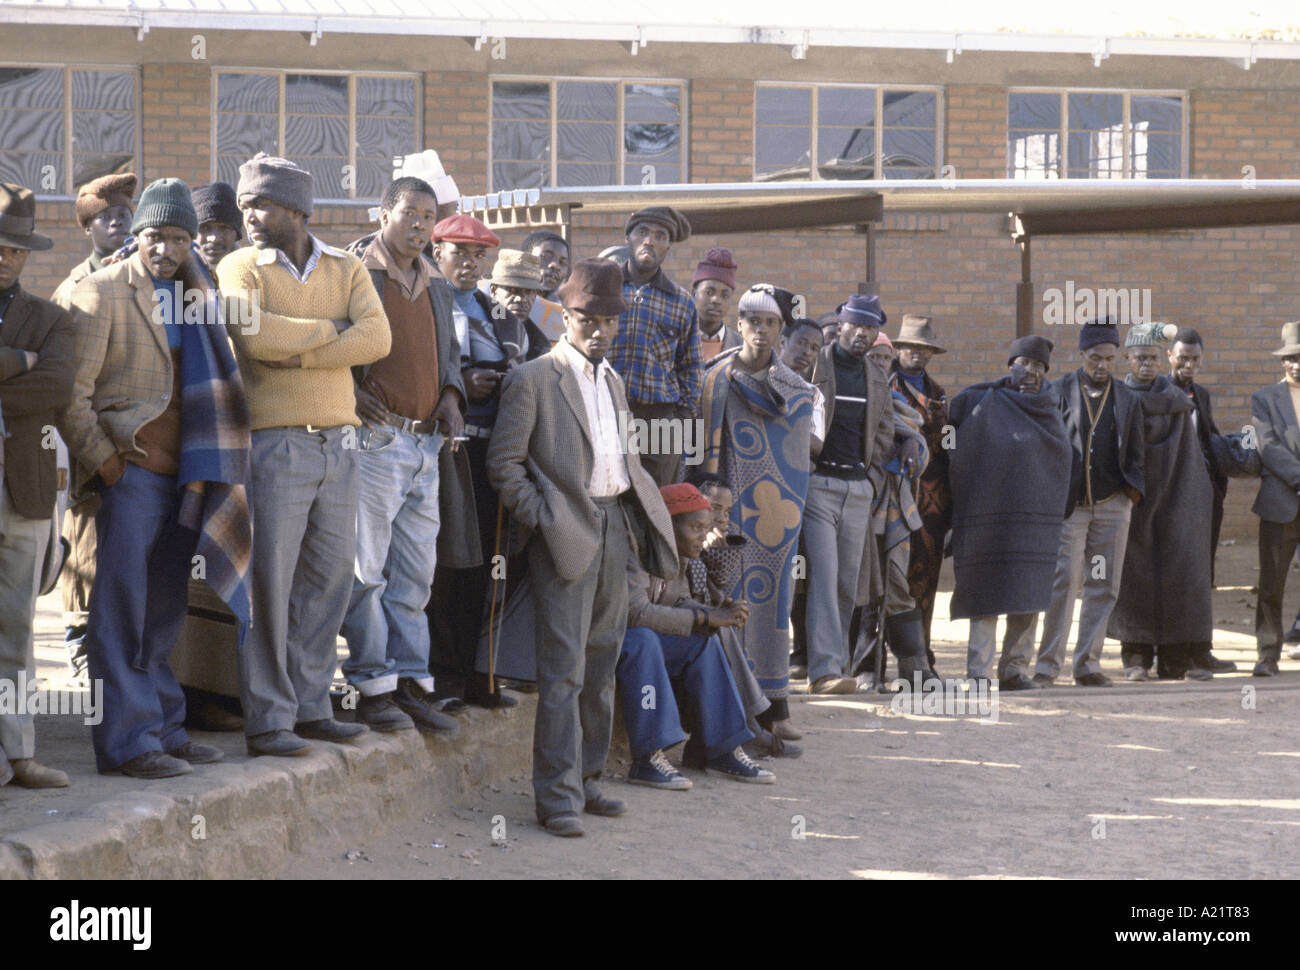 Trabajadores migrantes desempleados esperando trabajo, Lesotho, África meridional Foto de stock